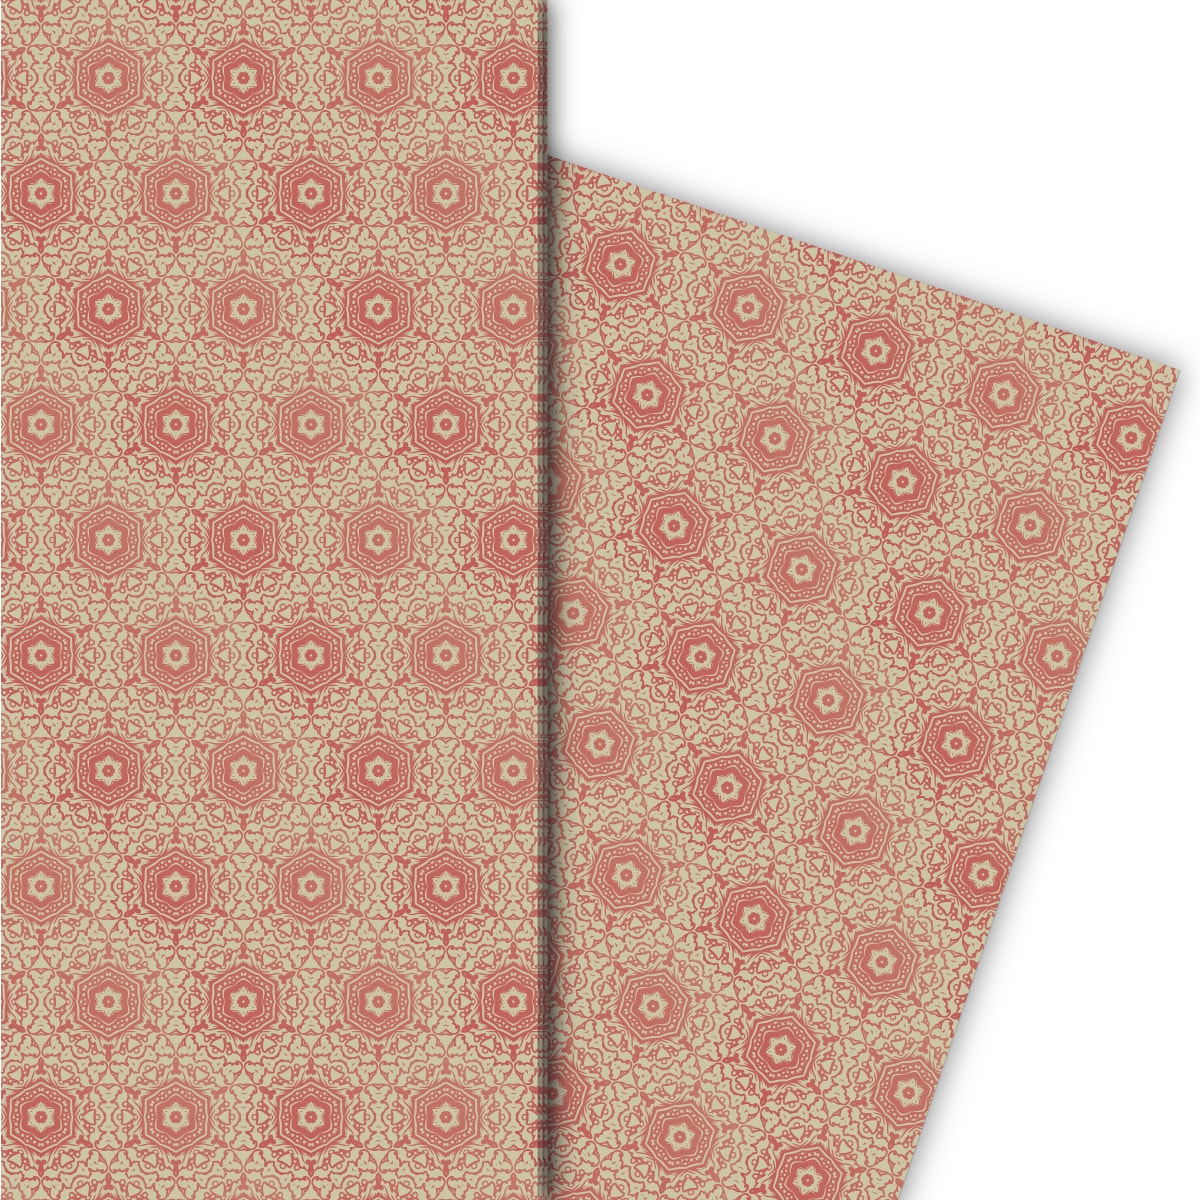 Kartenkaufrausch: Ornamentales Geschenkpapier für liebevolle aus unserer Designer Papeterie in rosa